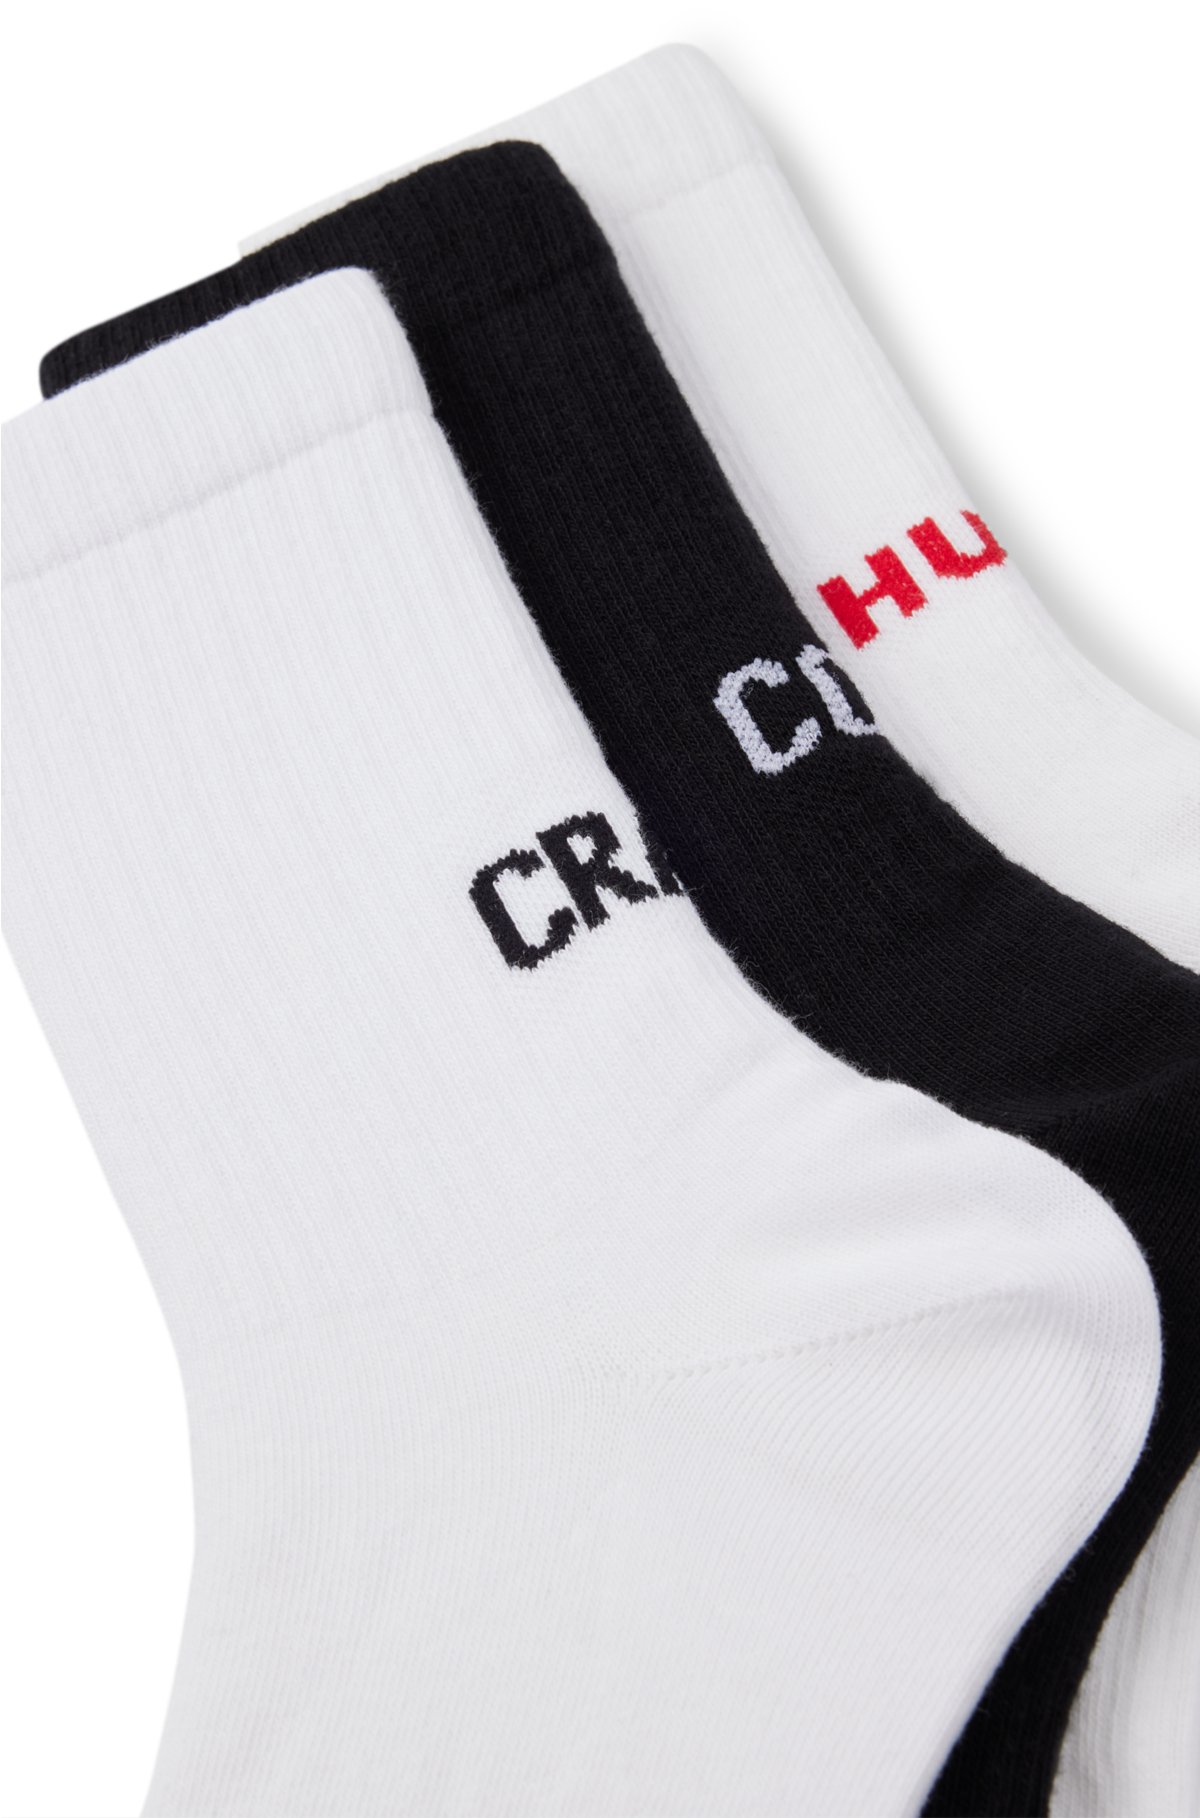 Three-pack of short-length socks with logo details, White / Black